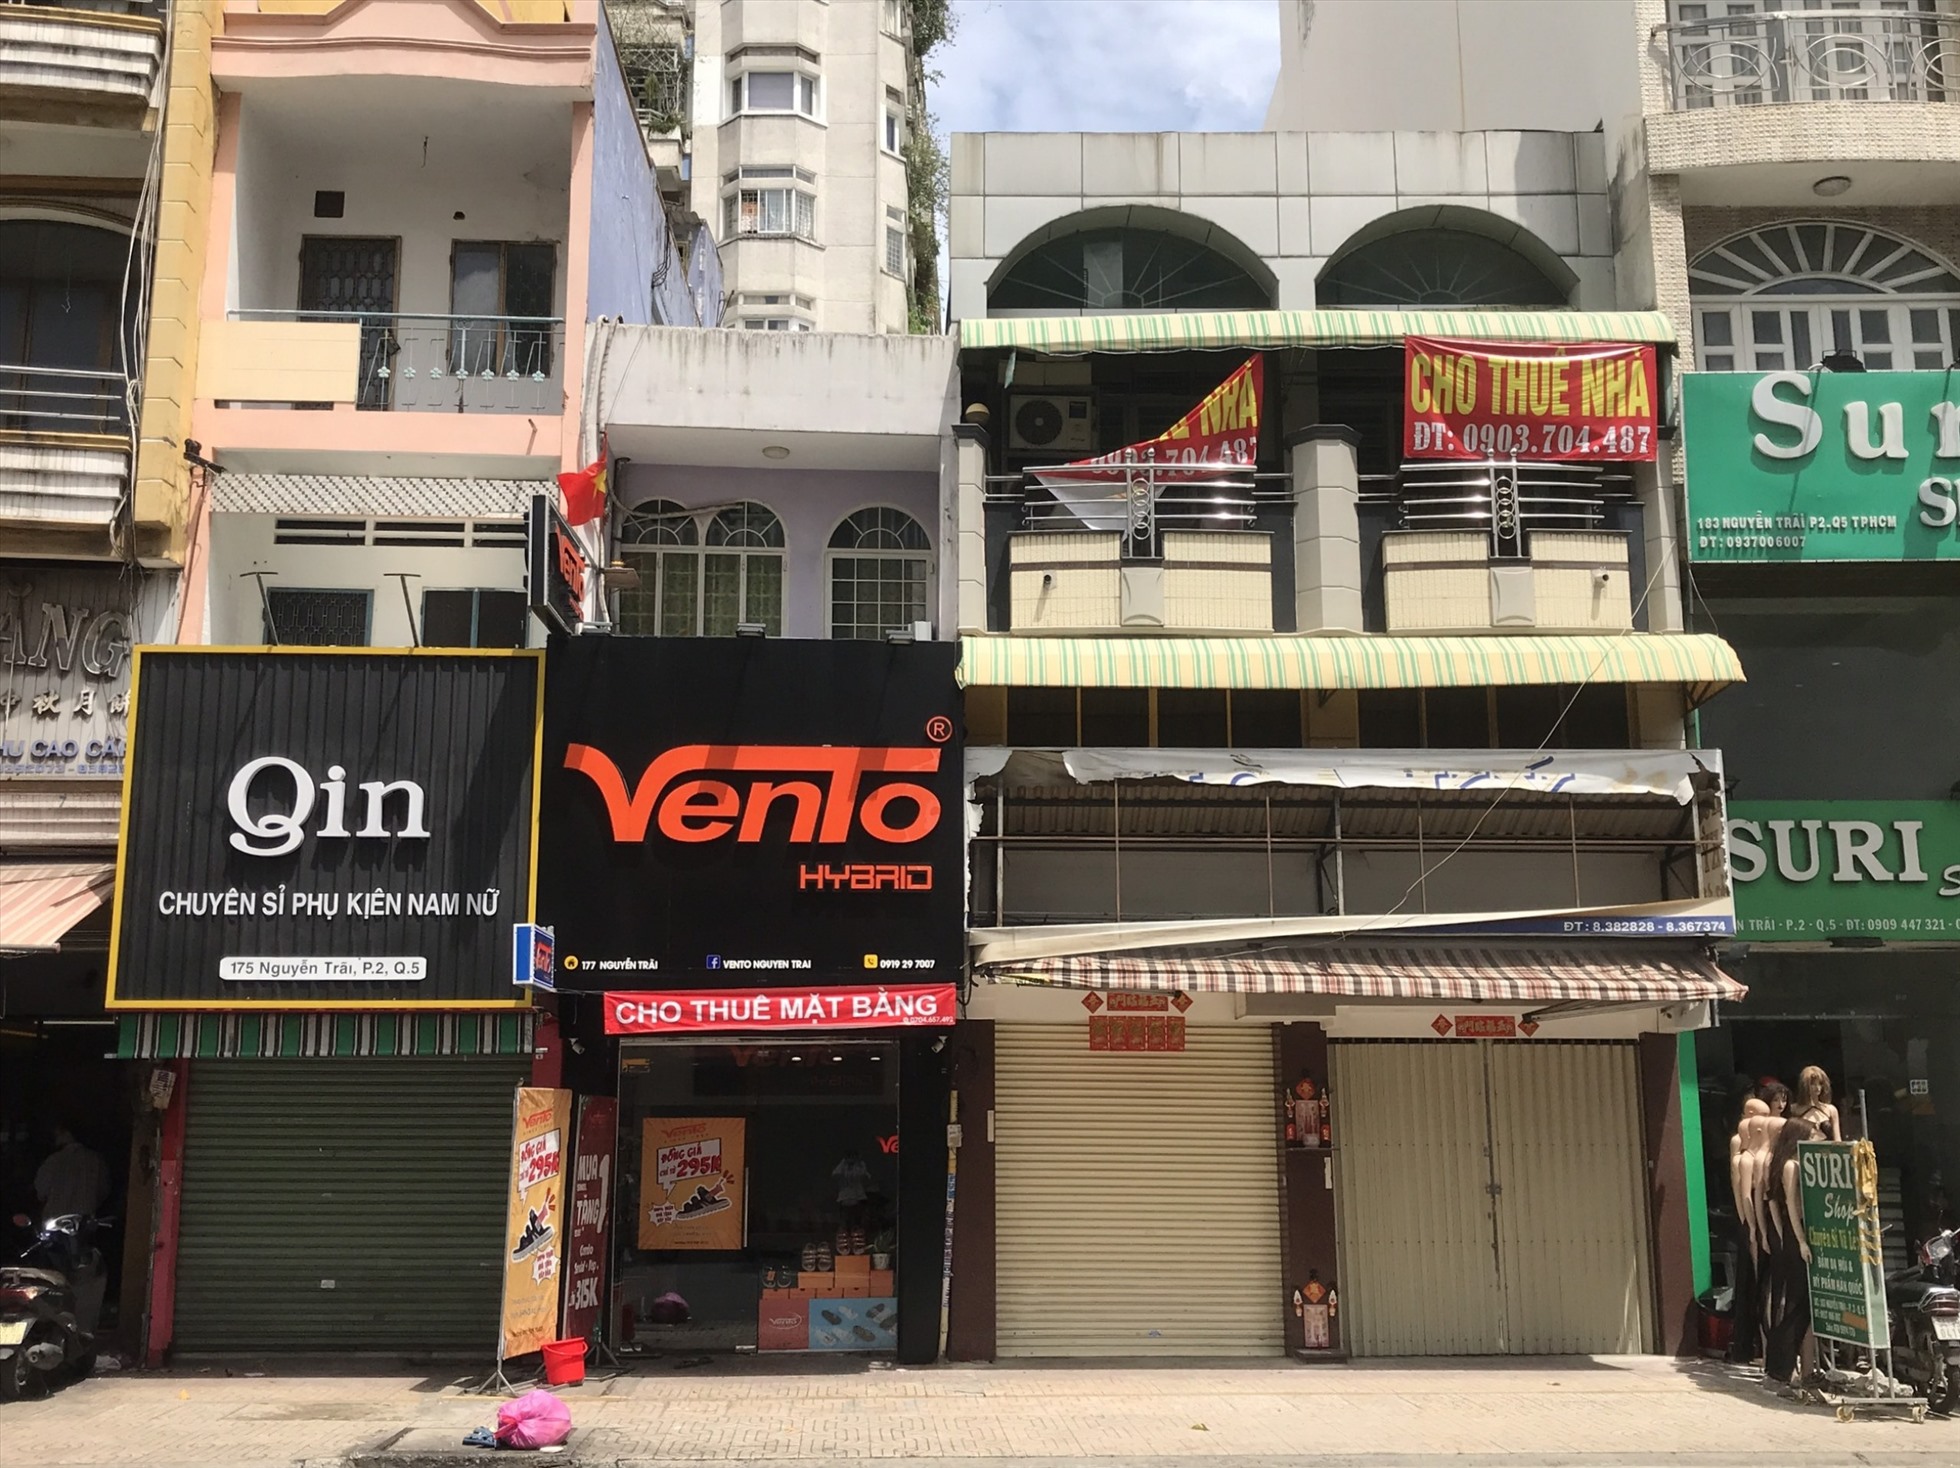 Liên tiếp 2 3 cửa hàng thời trang lần lượt trả mặt bằng trên tuyến đường Nguyễn Trãi sầm uất, náo nhiệt.